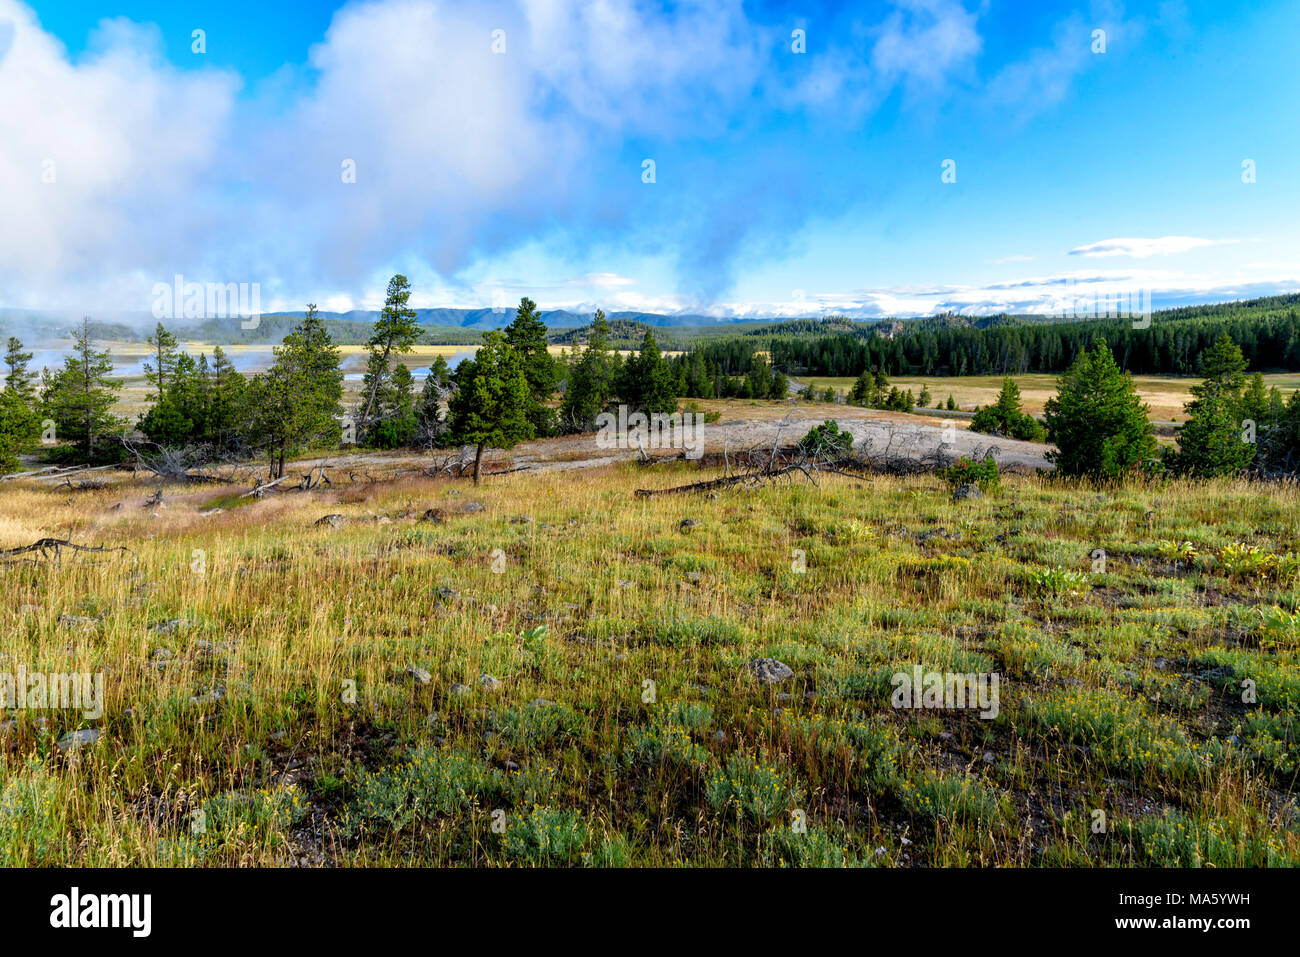 Feld Öffnen mit grünen Pinien im Hintergrund unter strahlend blauem Himmel mit Wolken. Stockfoto